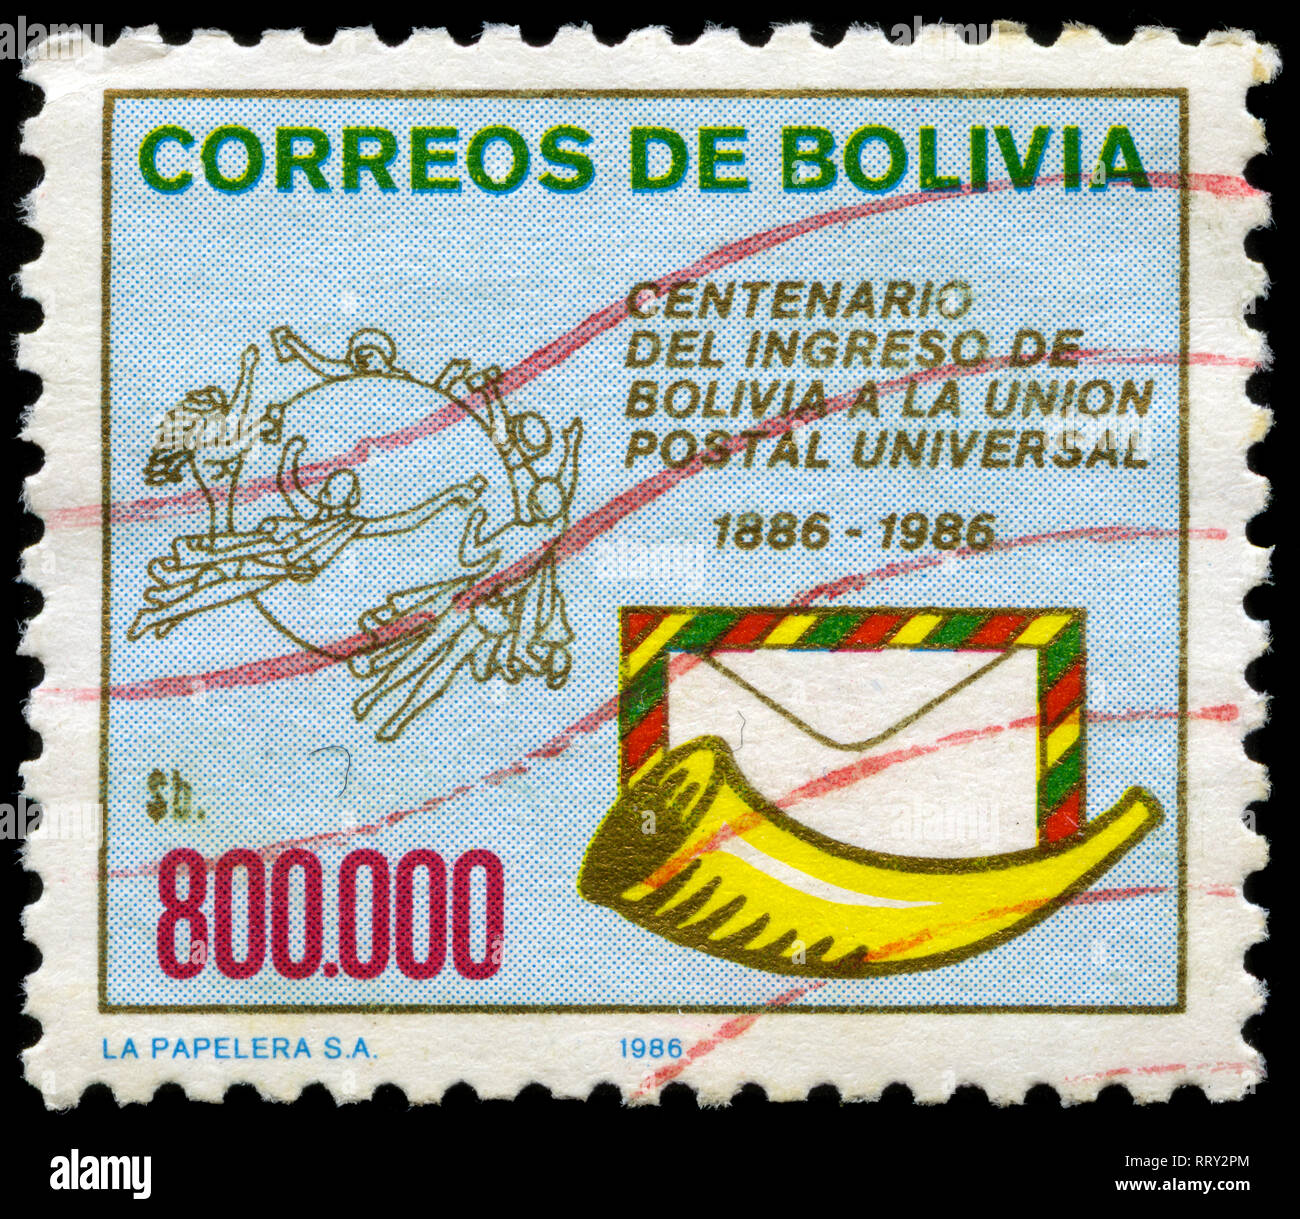 Francobollo da Bolivia nella composizione della Bolivia in Unione Postale Universale serie emessi nel 1986 Foto Stock